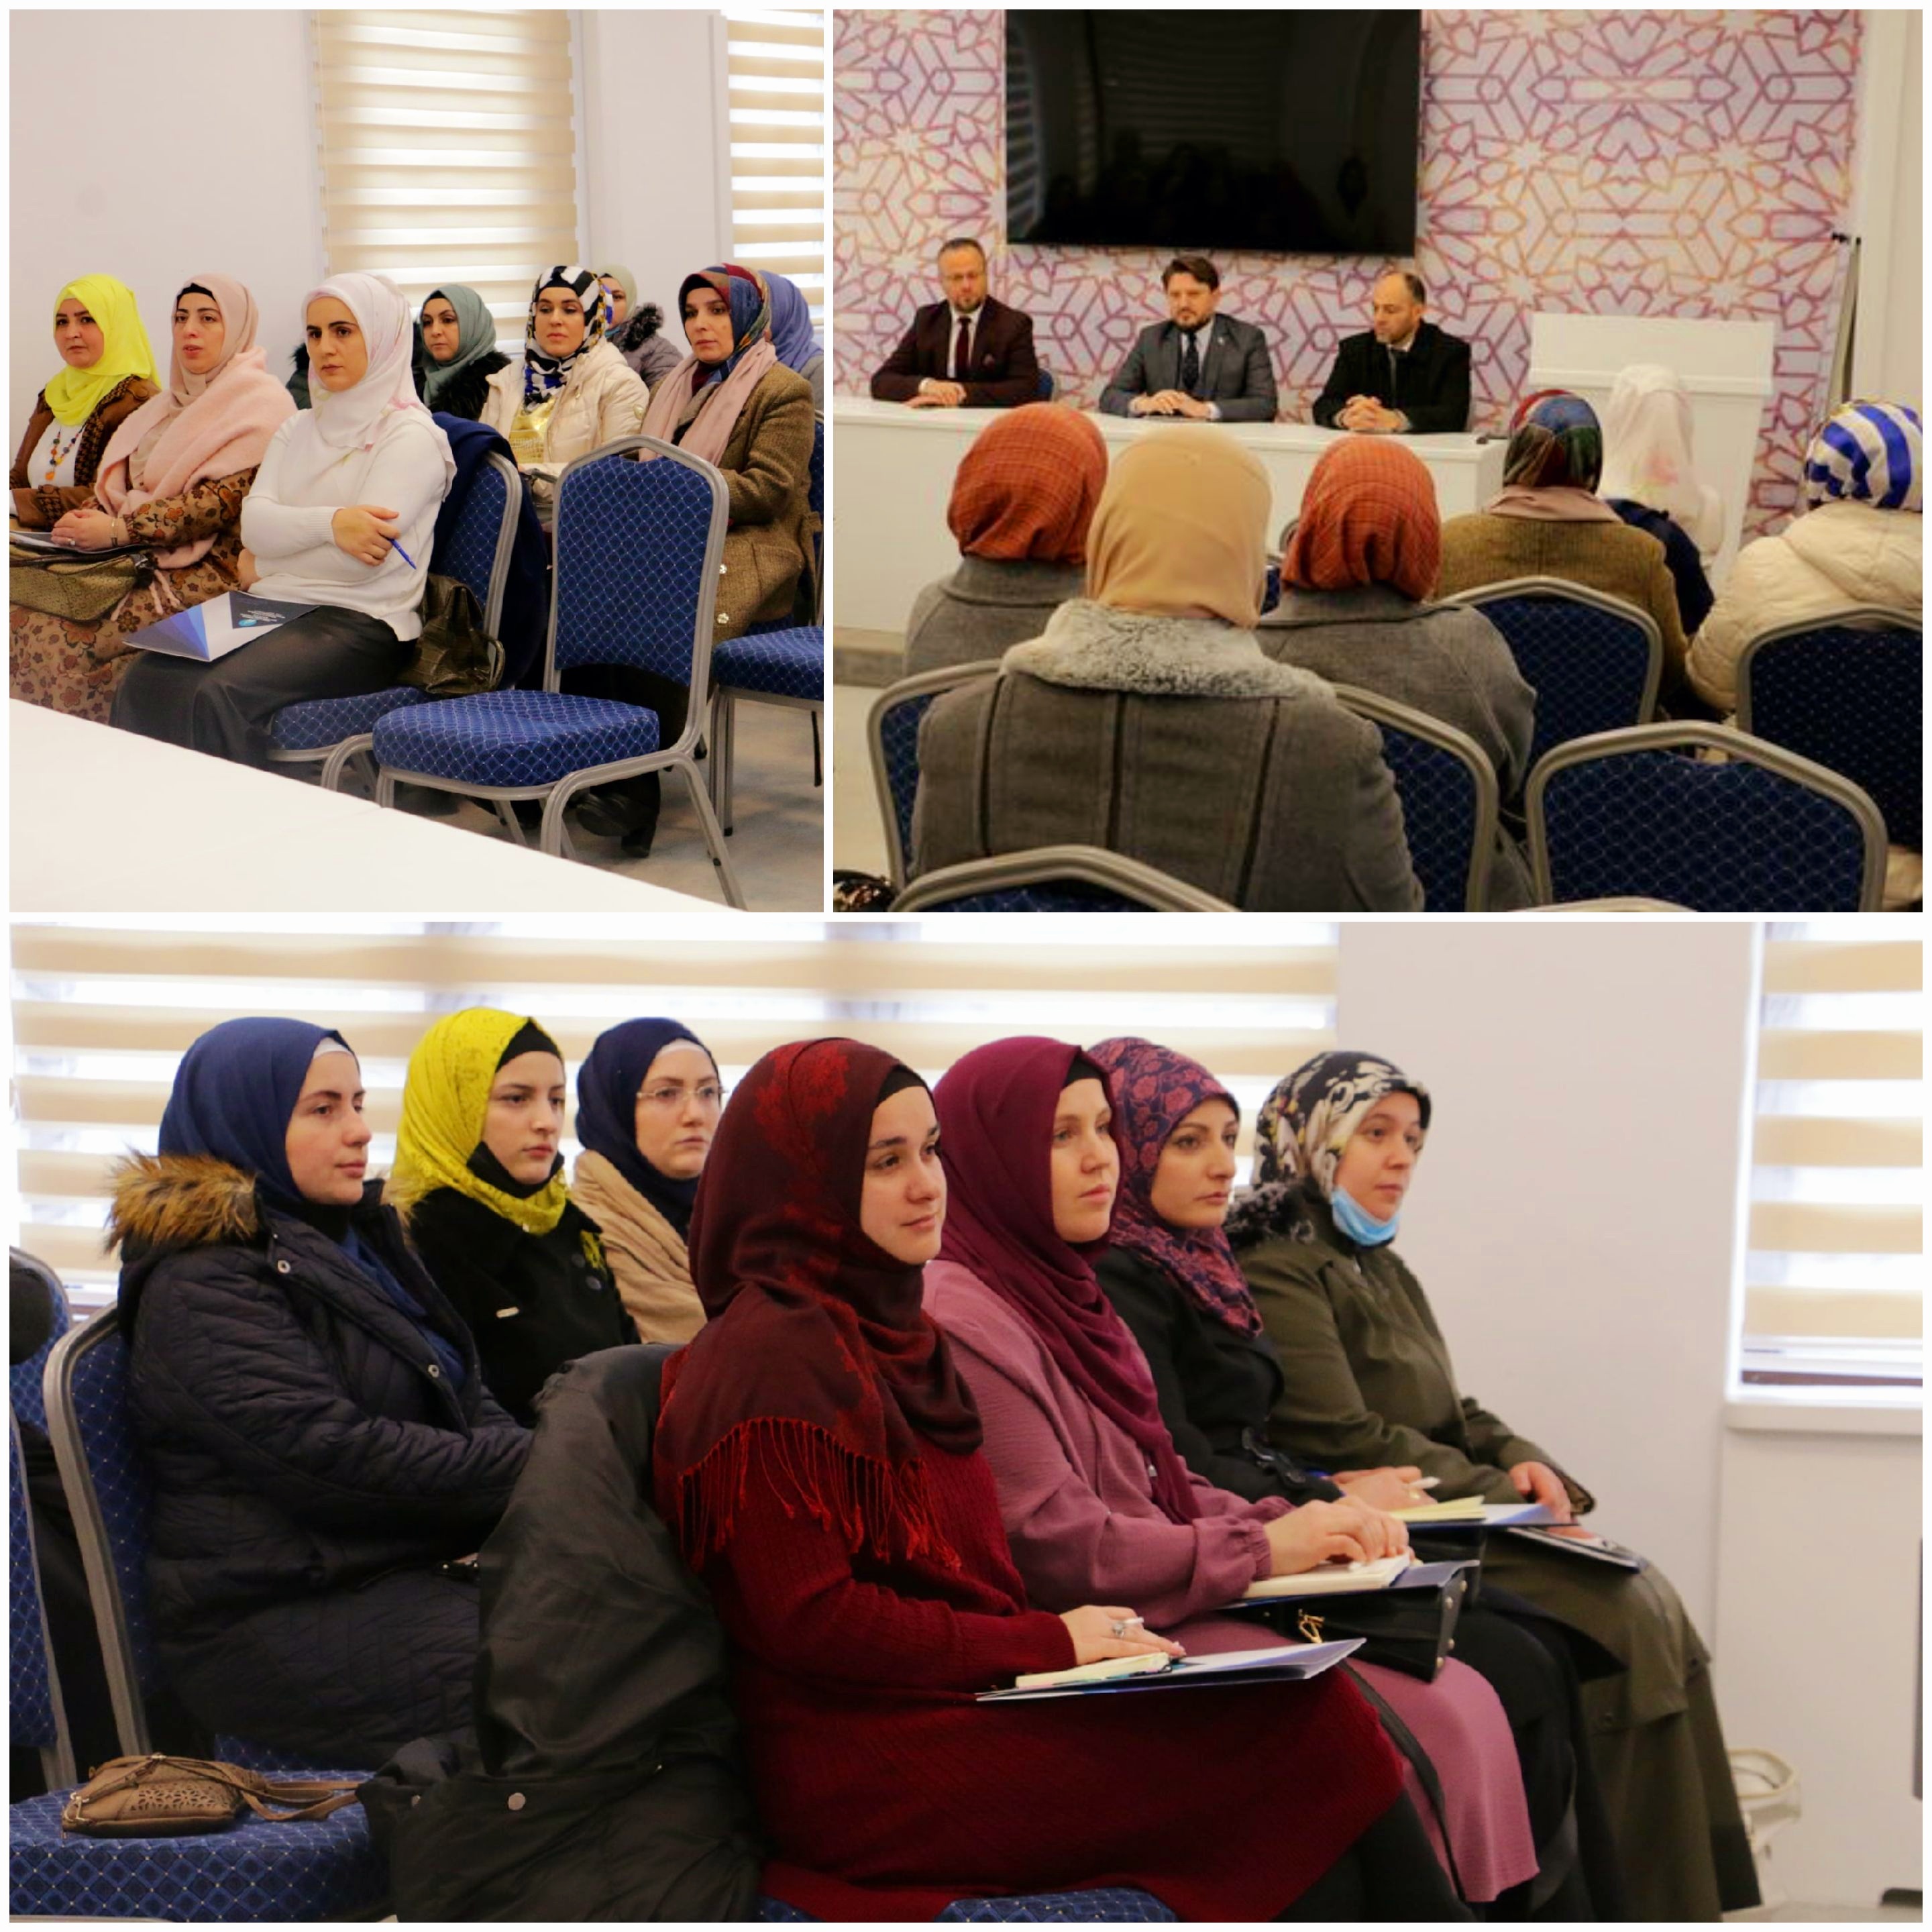 تسعى المشيخة الإسلامية في كوسوفا بالارتقاء بمستوى التعليم الإسلامي عبر تنفيذ البرامج التدريبية للمعلمين والمعلمات حول أساس وقواعد تعليم الإسلام.